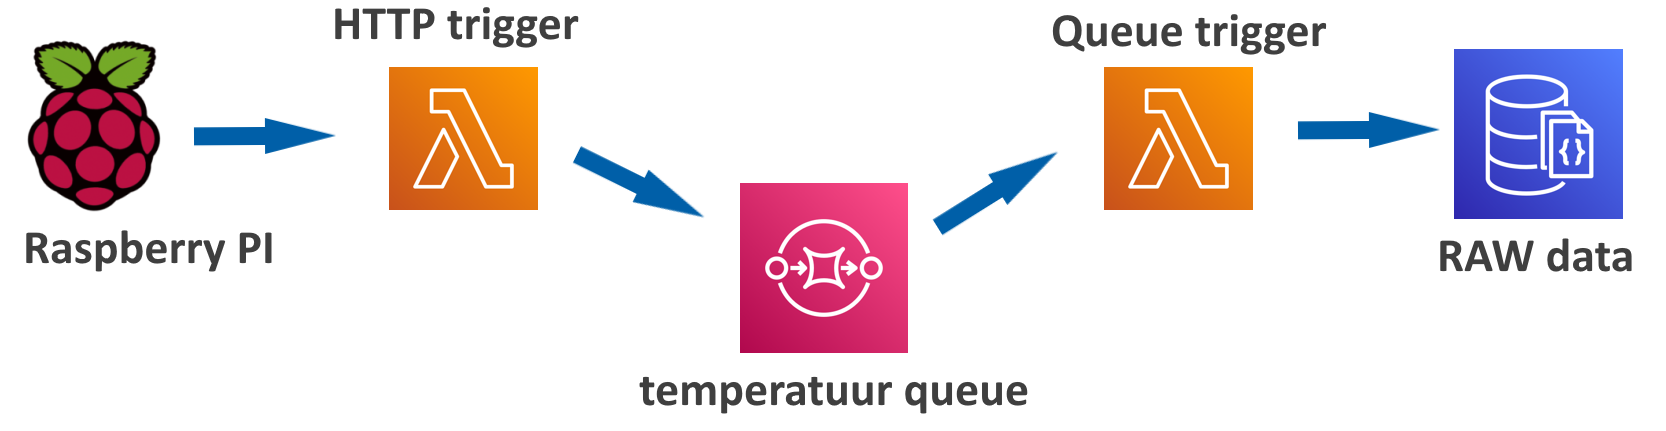 temperatuur logging schema